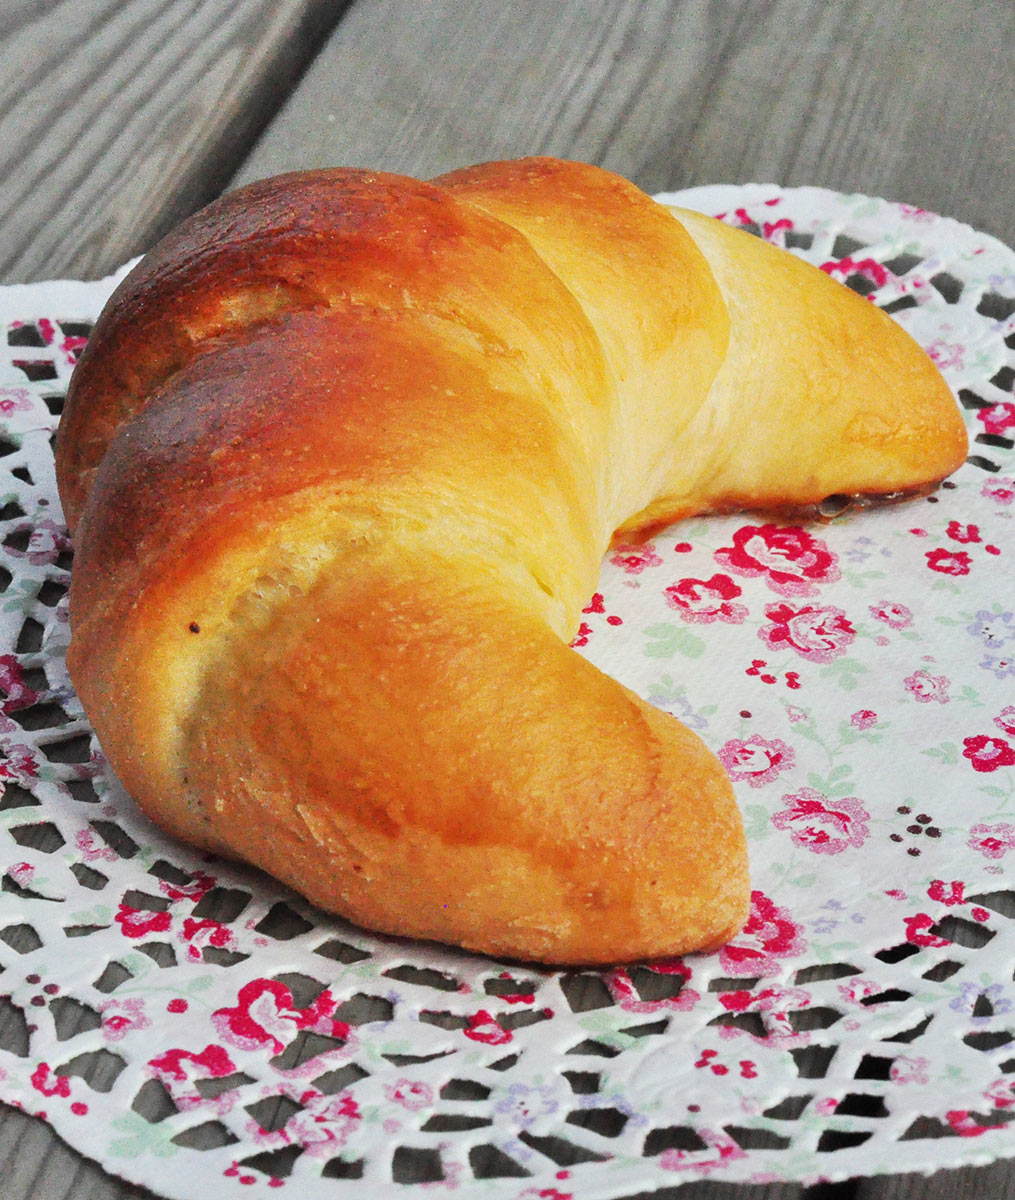 Almost Croissants: Cornetti With Briosche Dough - Bread and Companatico